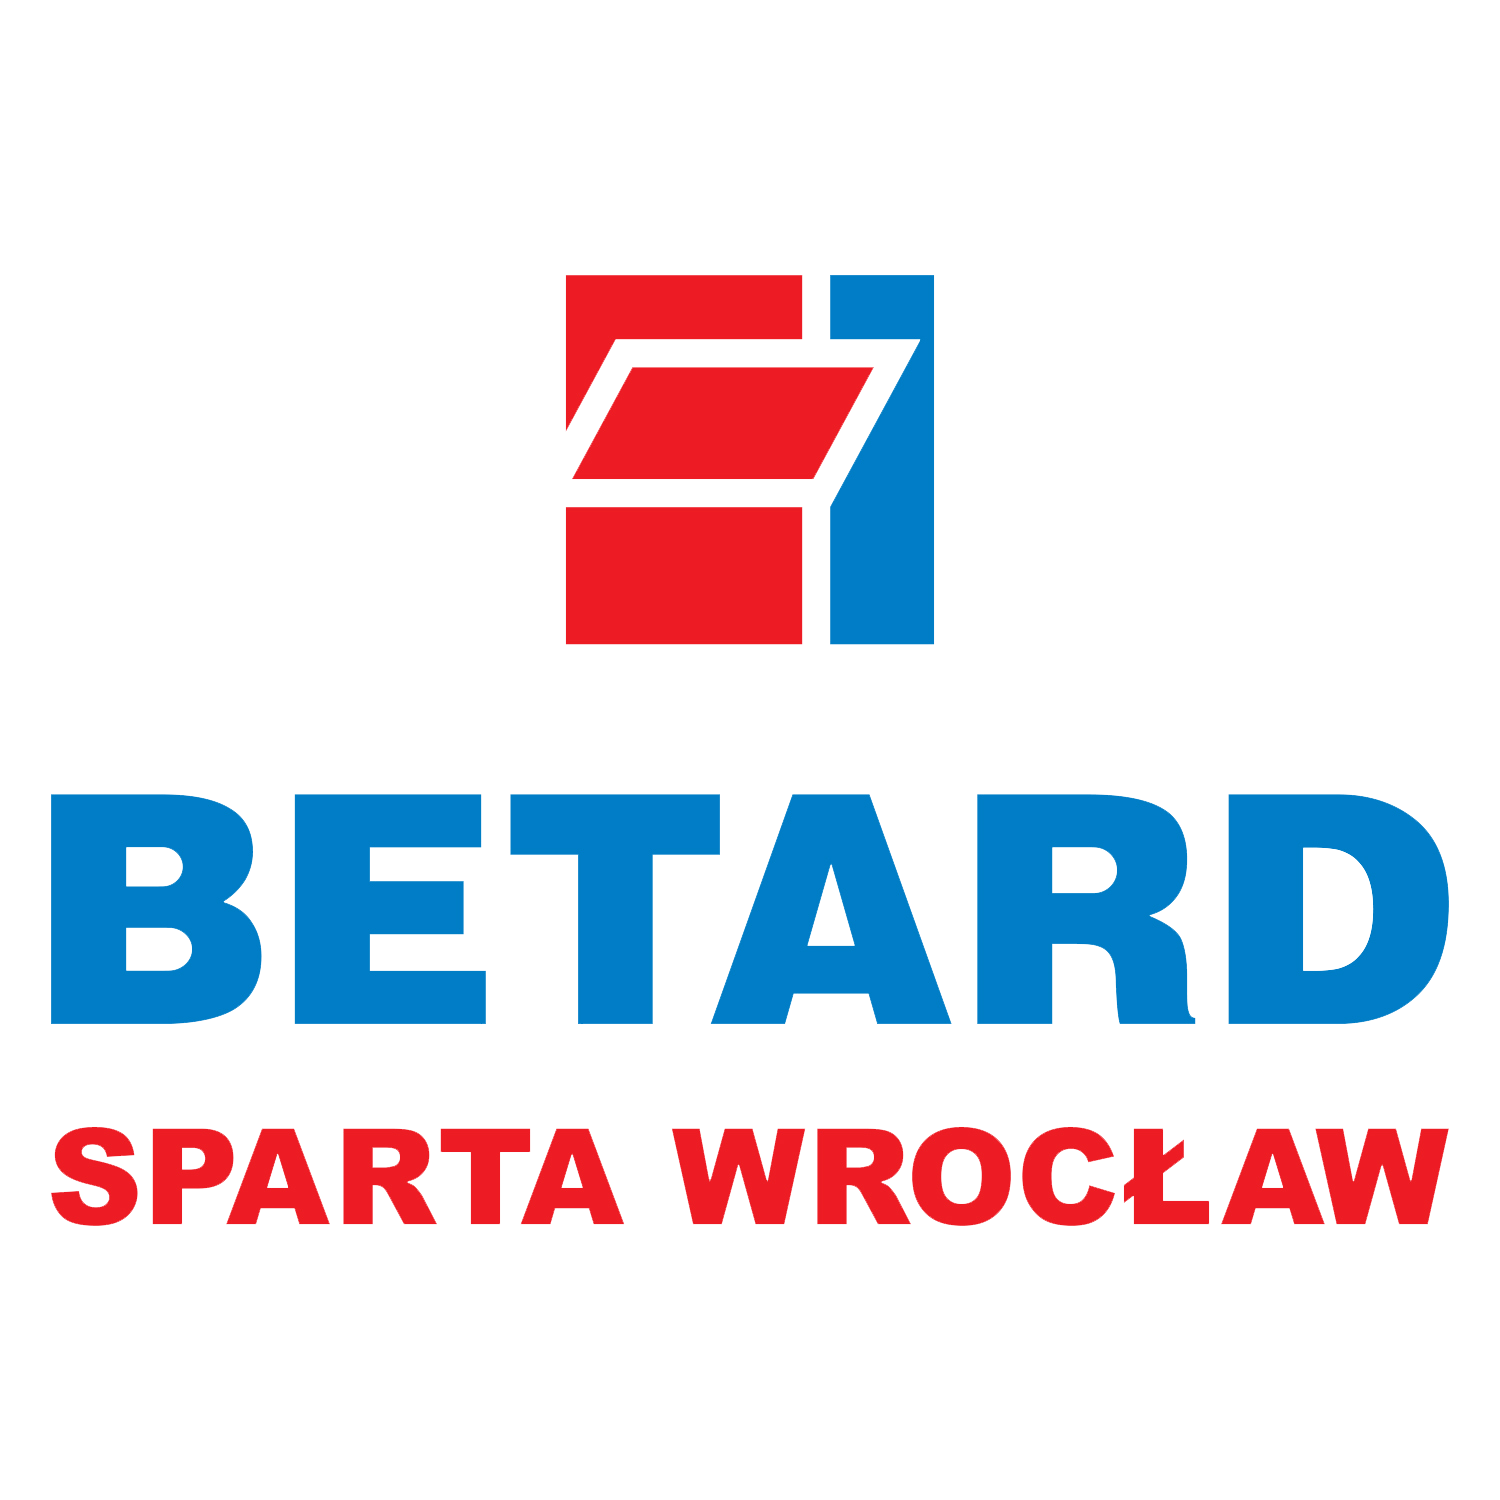 betard-sparta-wroclaw.png Logo